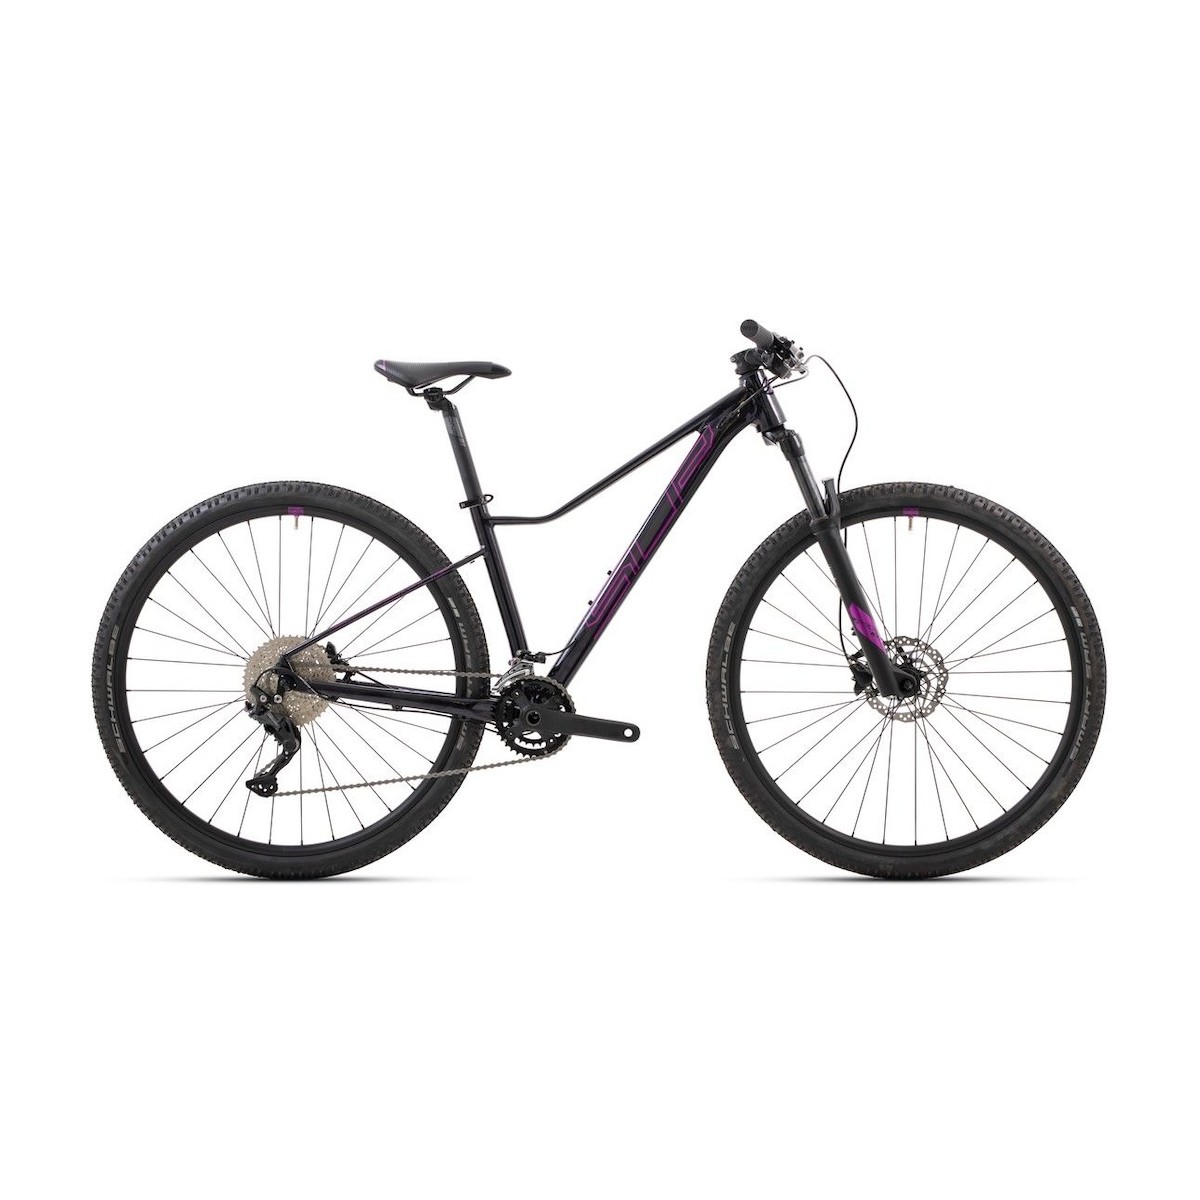 SUPERIOR XC 879 W 29 sieviešu velosipēds - melns/violets - 2022